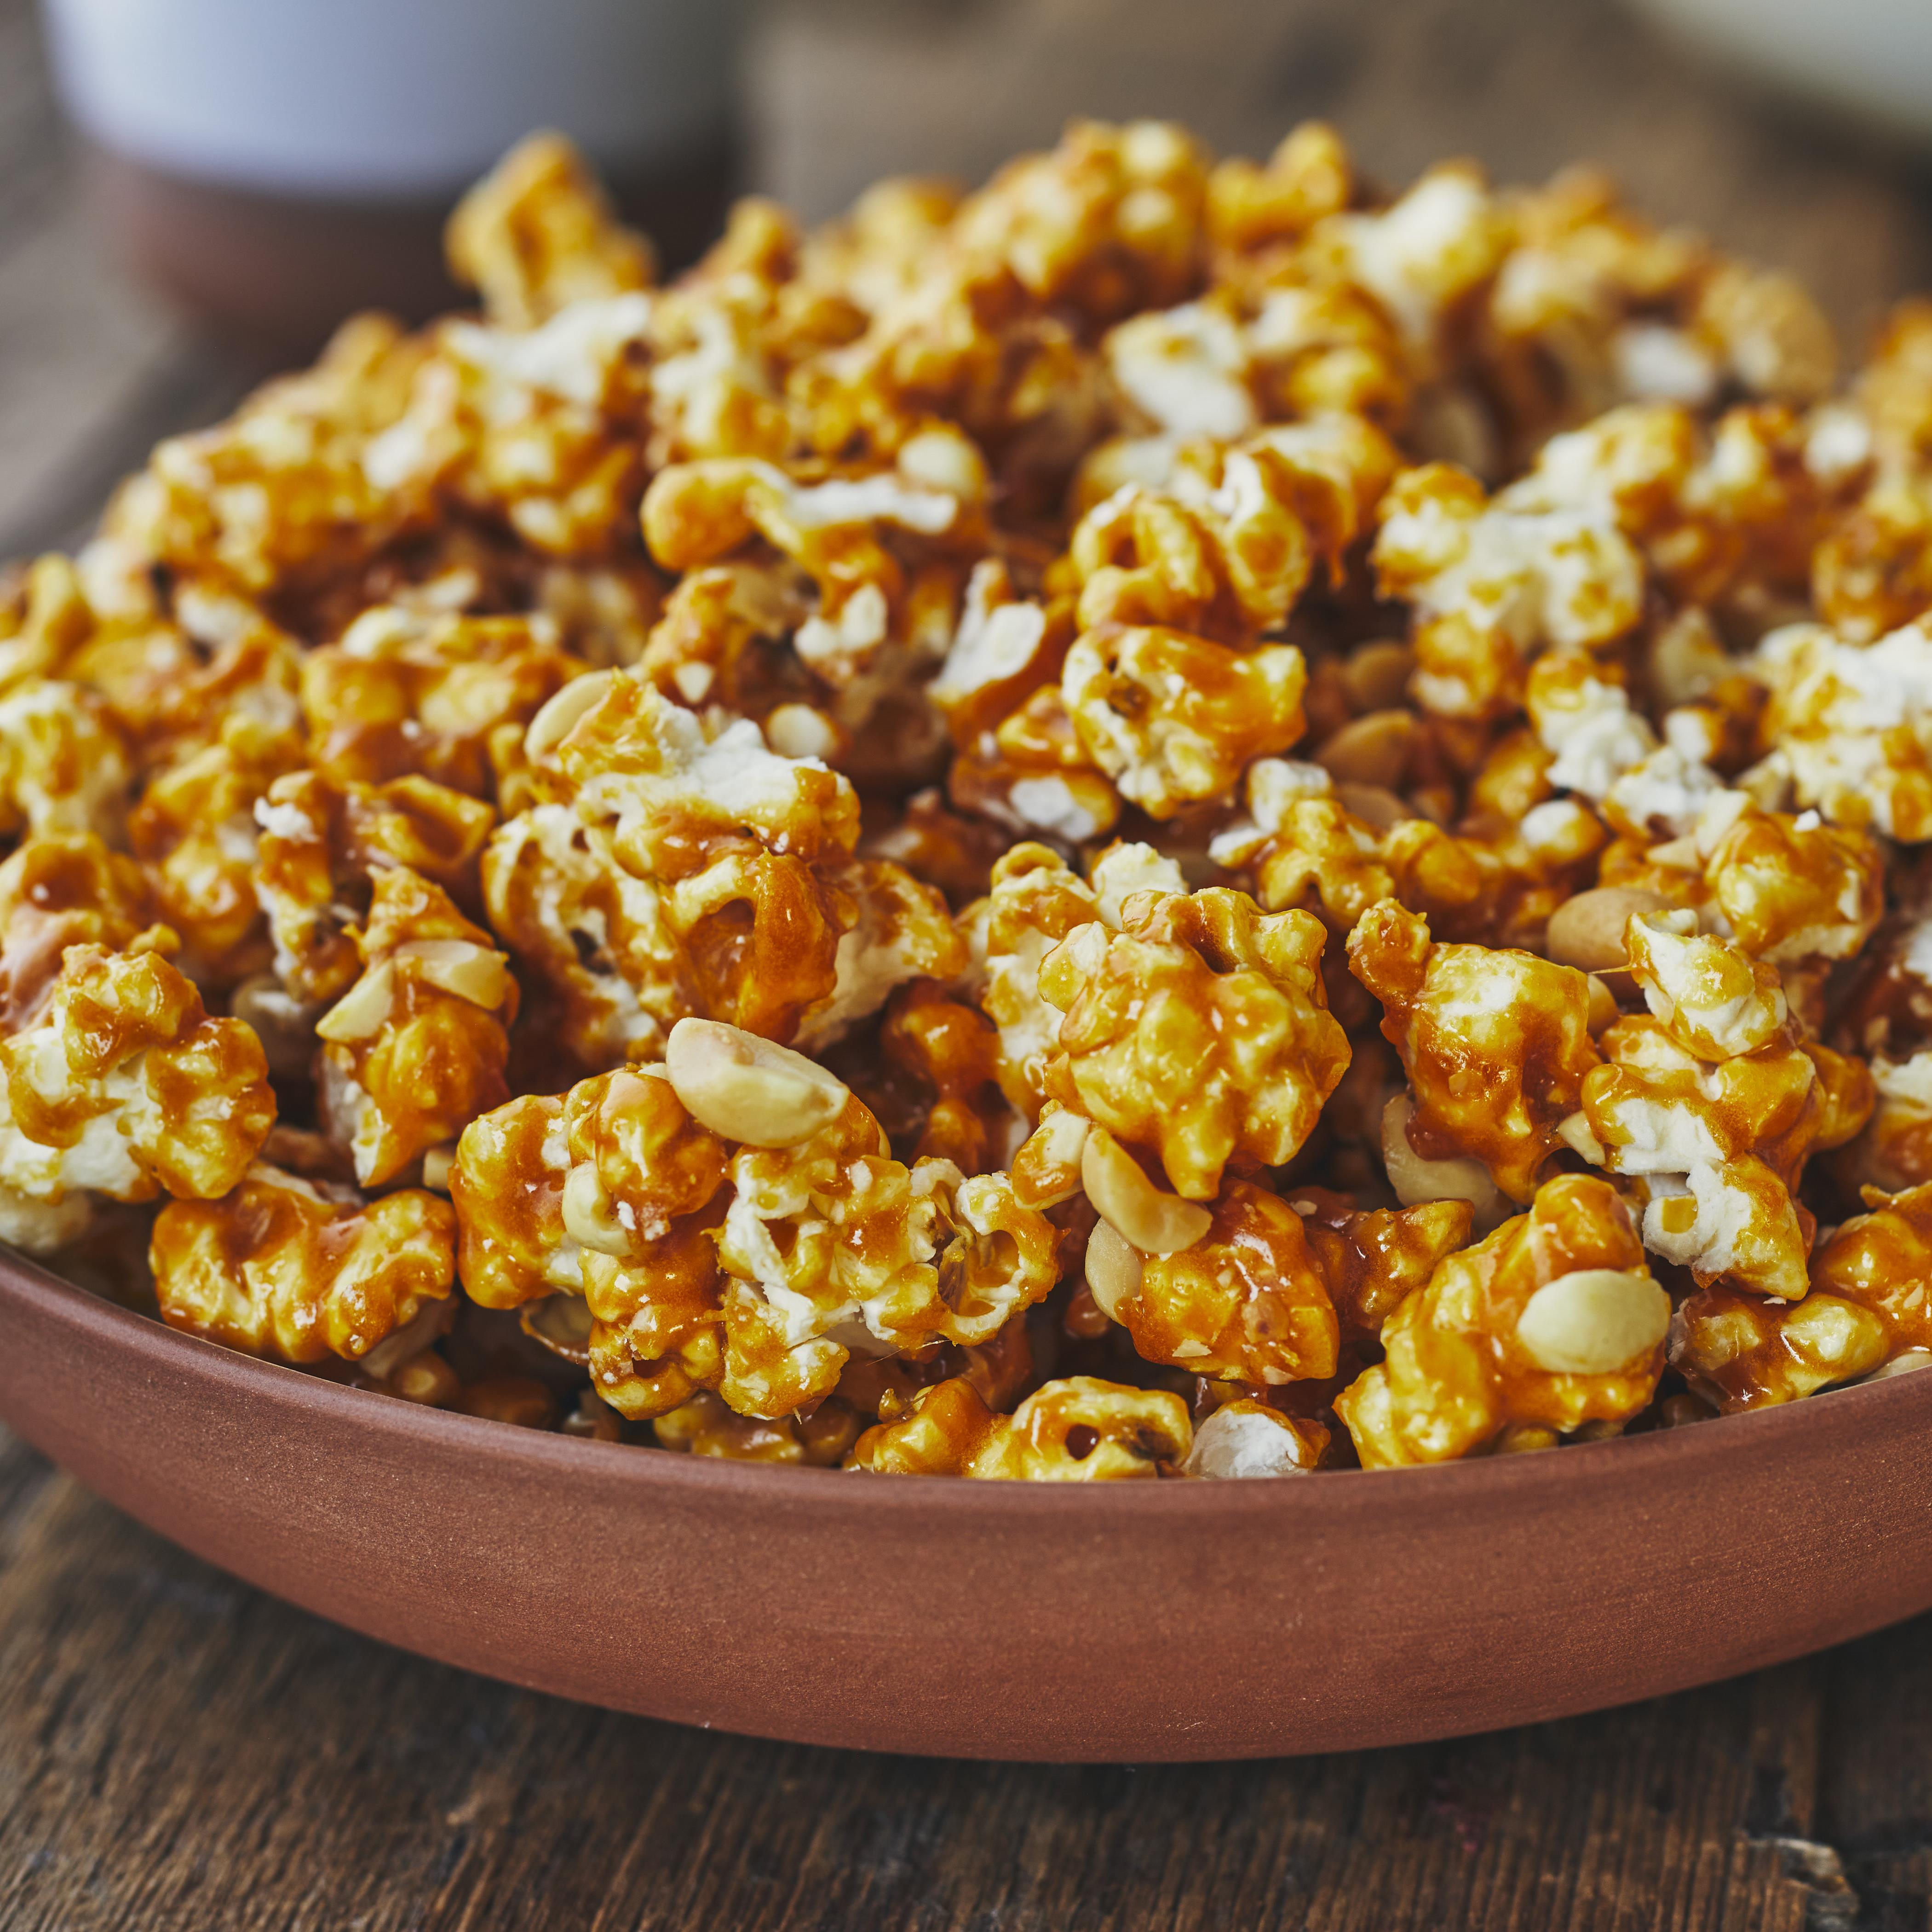 Recette Popcorn - Popcorn aux fraises Tagada - Le Grain Qui Pop